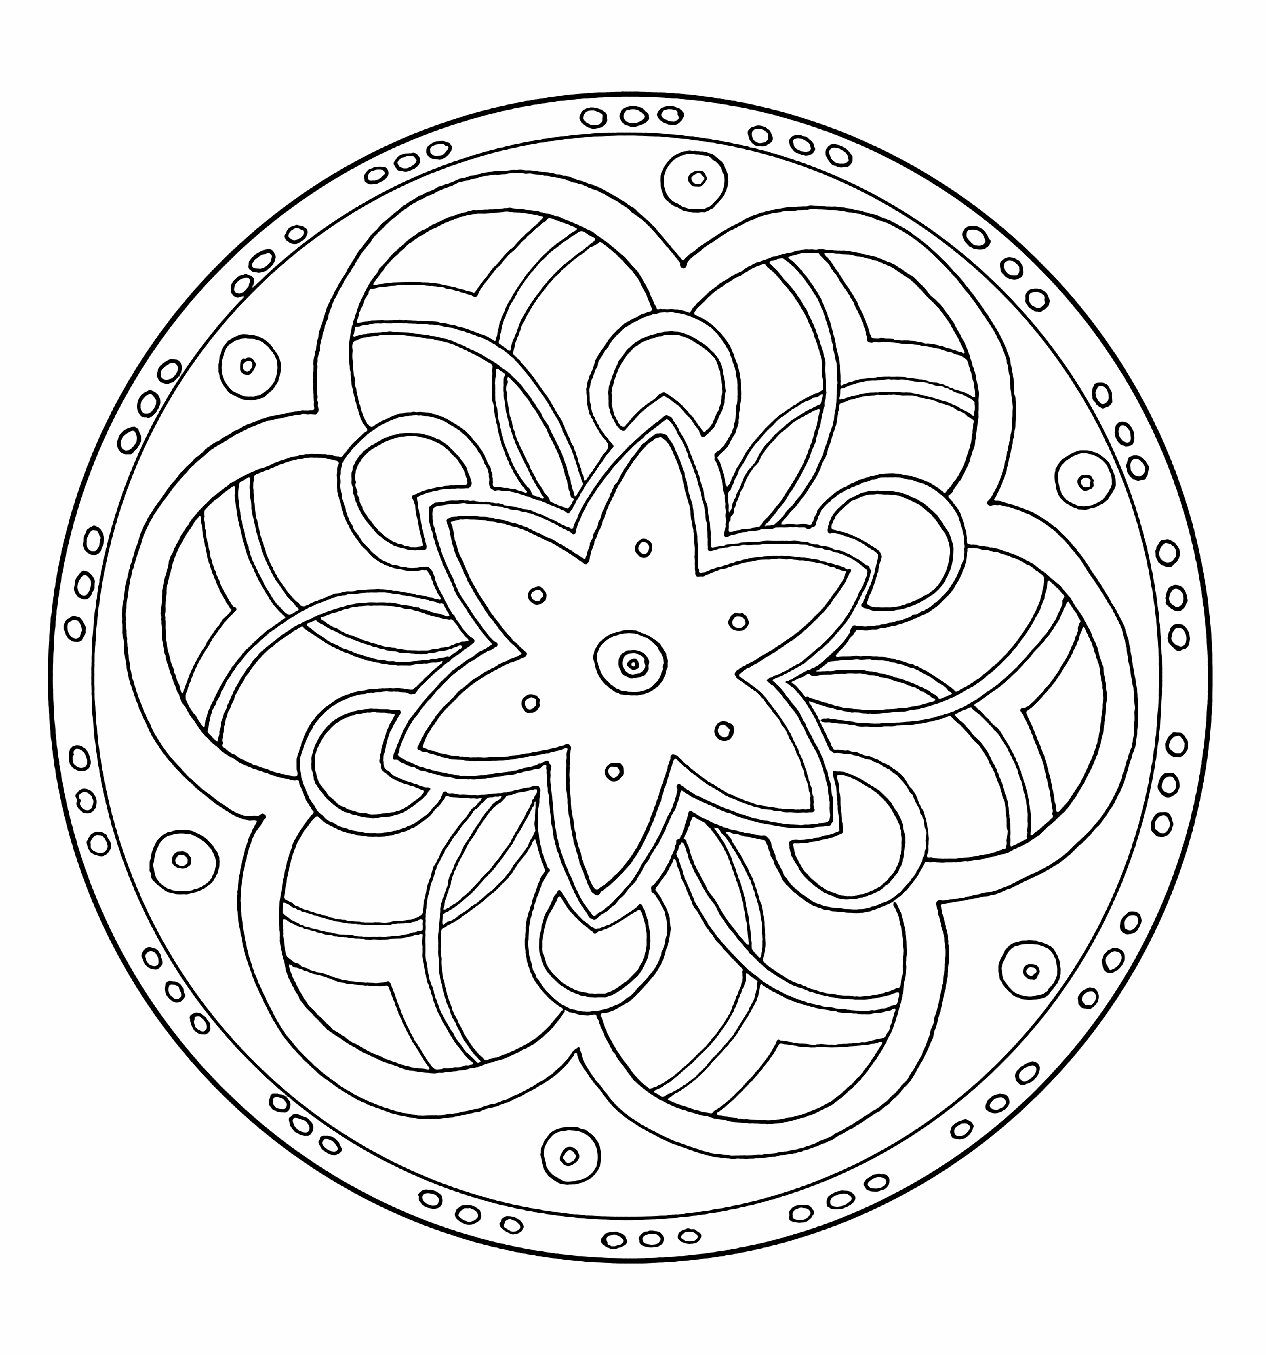 Mandala zum Ausmalen mit Spiralen und einem wunderschönen Stern in der Mitte.